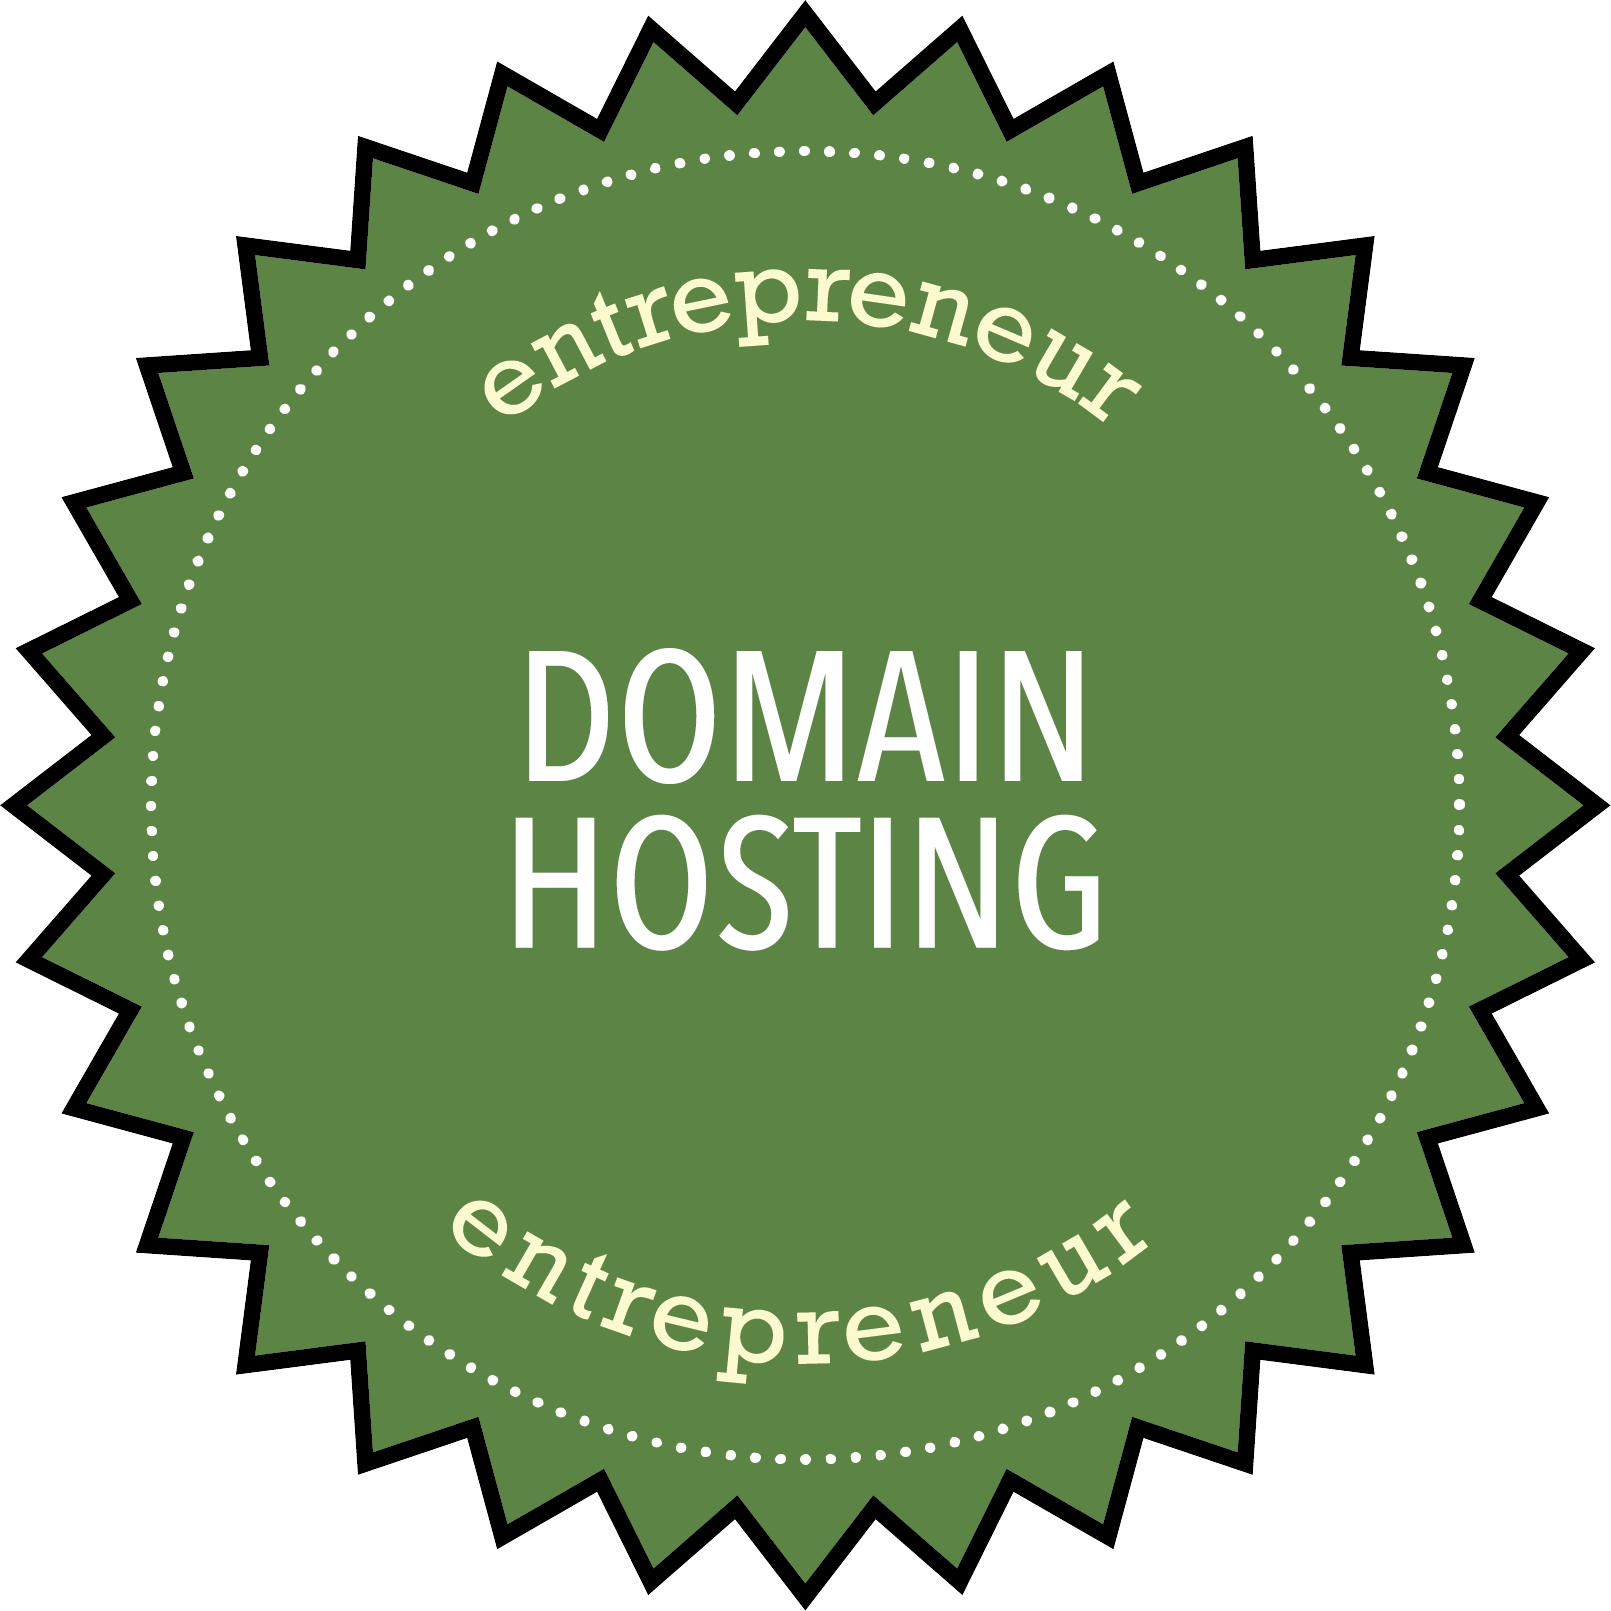 Entrepreneurship: Domain Hosting